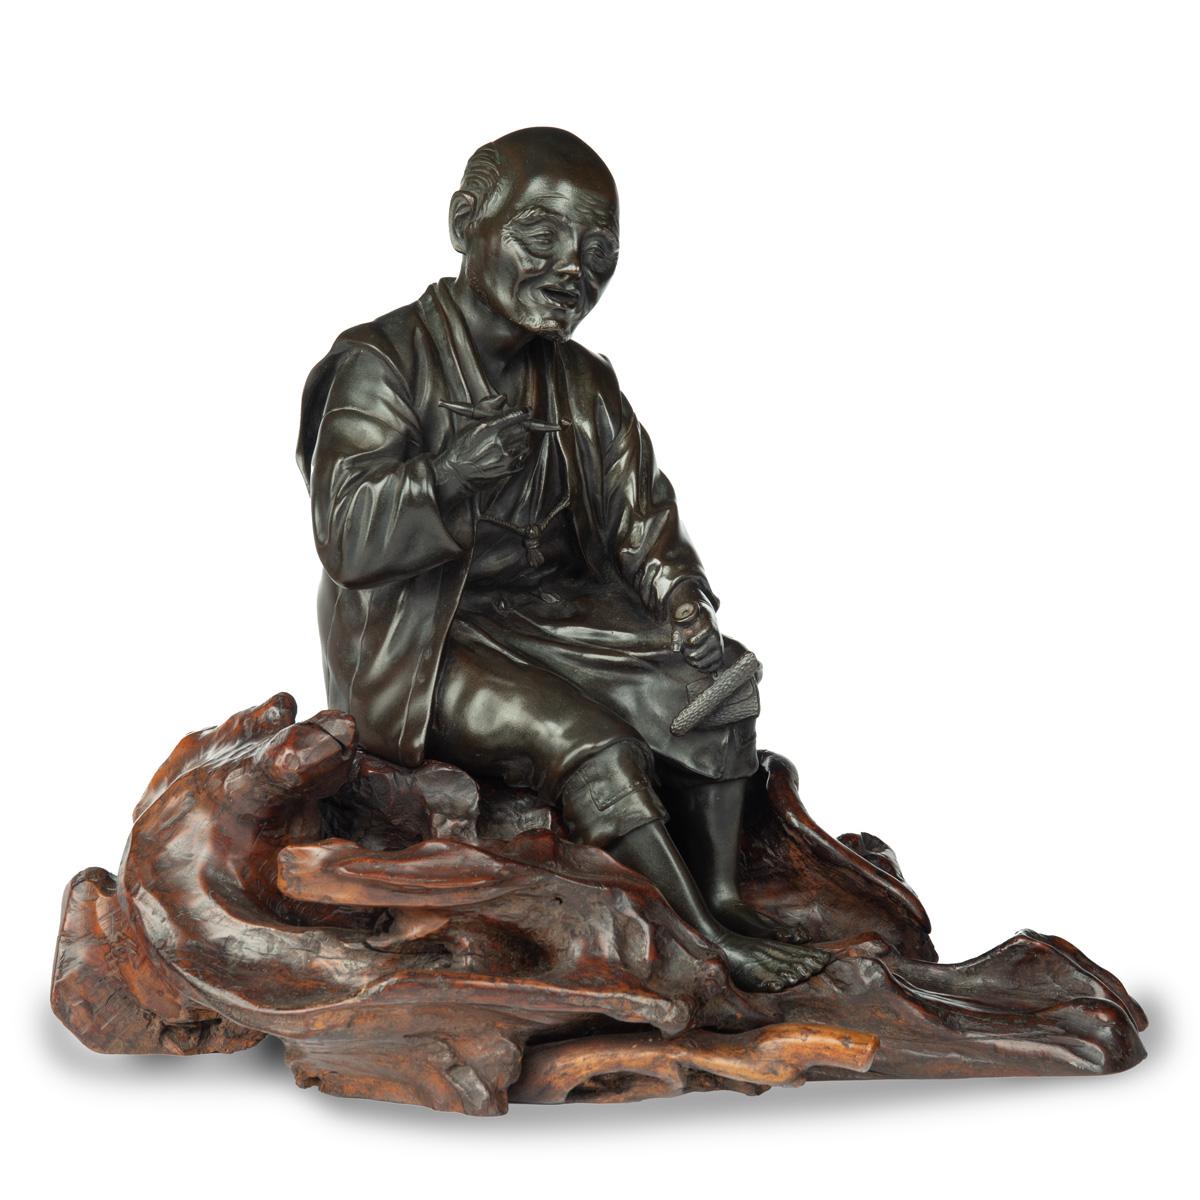 Bronze de la période Meiji représentant un homme assis en train de fumer, sa pipe dans la main droite reposant sur une base en bois de racine, vêtu d'un vêtement d'ouvrier et pieds nus, le visage étant sculpté de manière expressive,  signé d'un